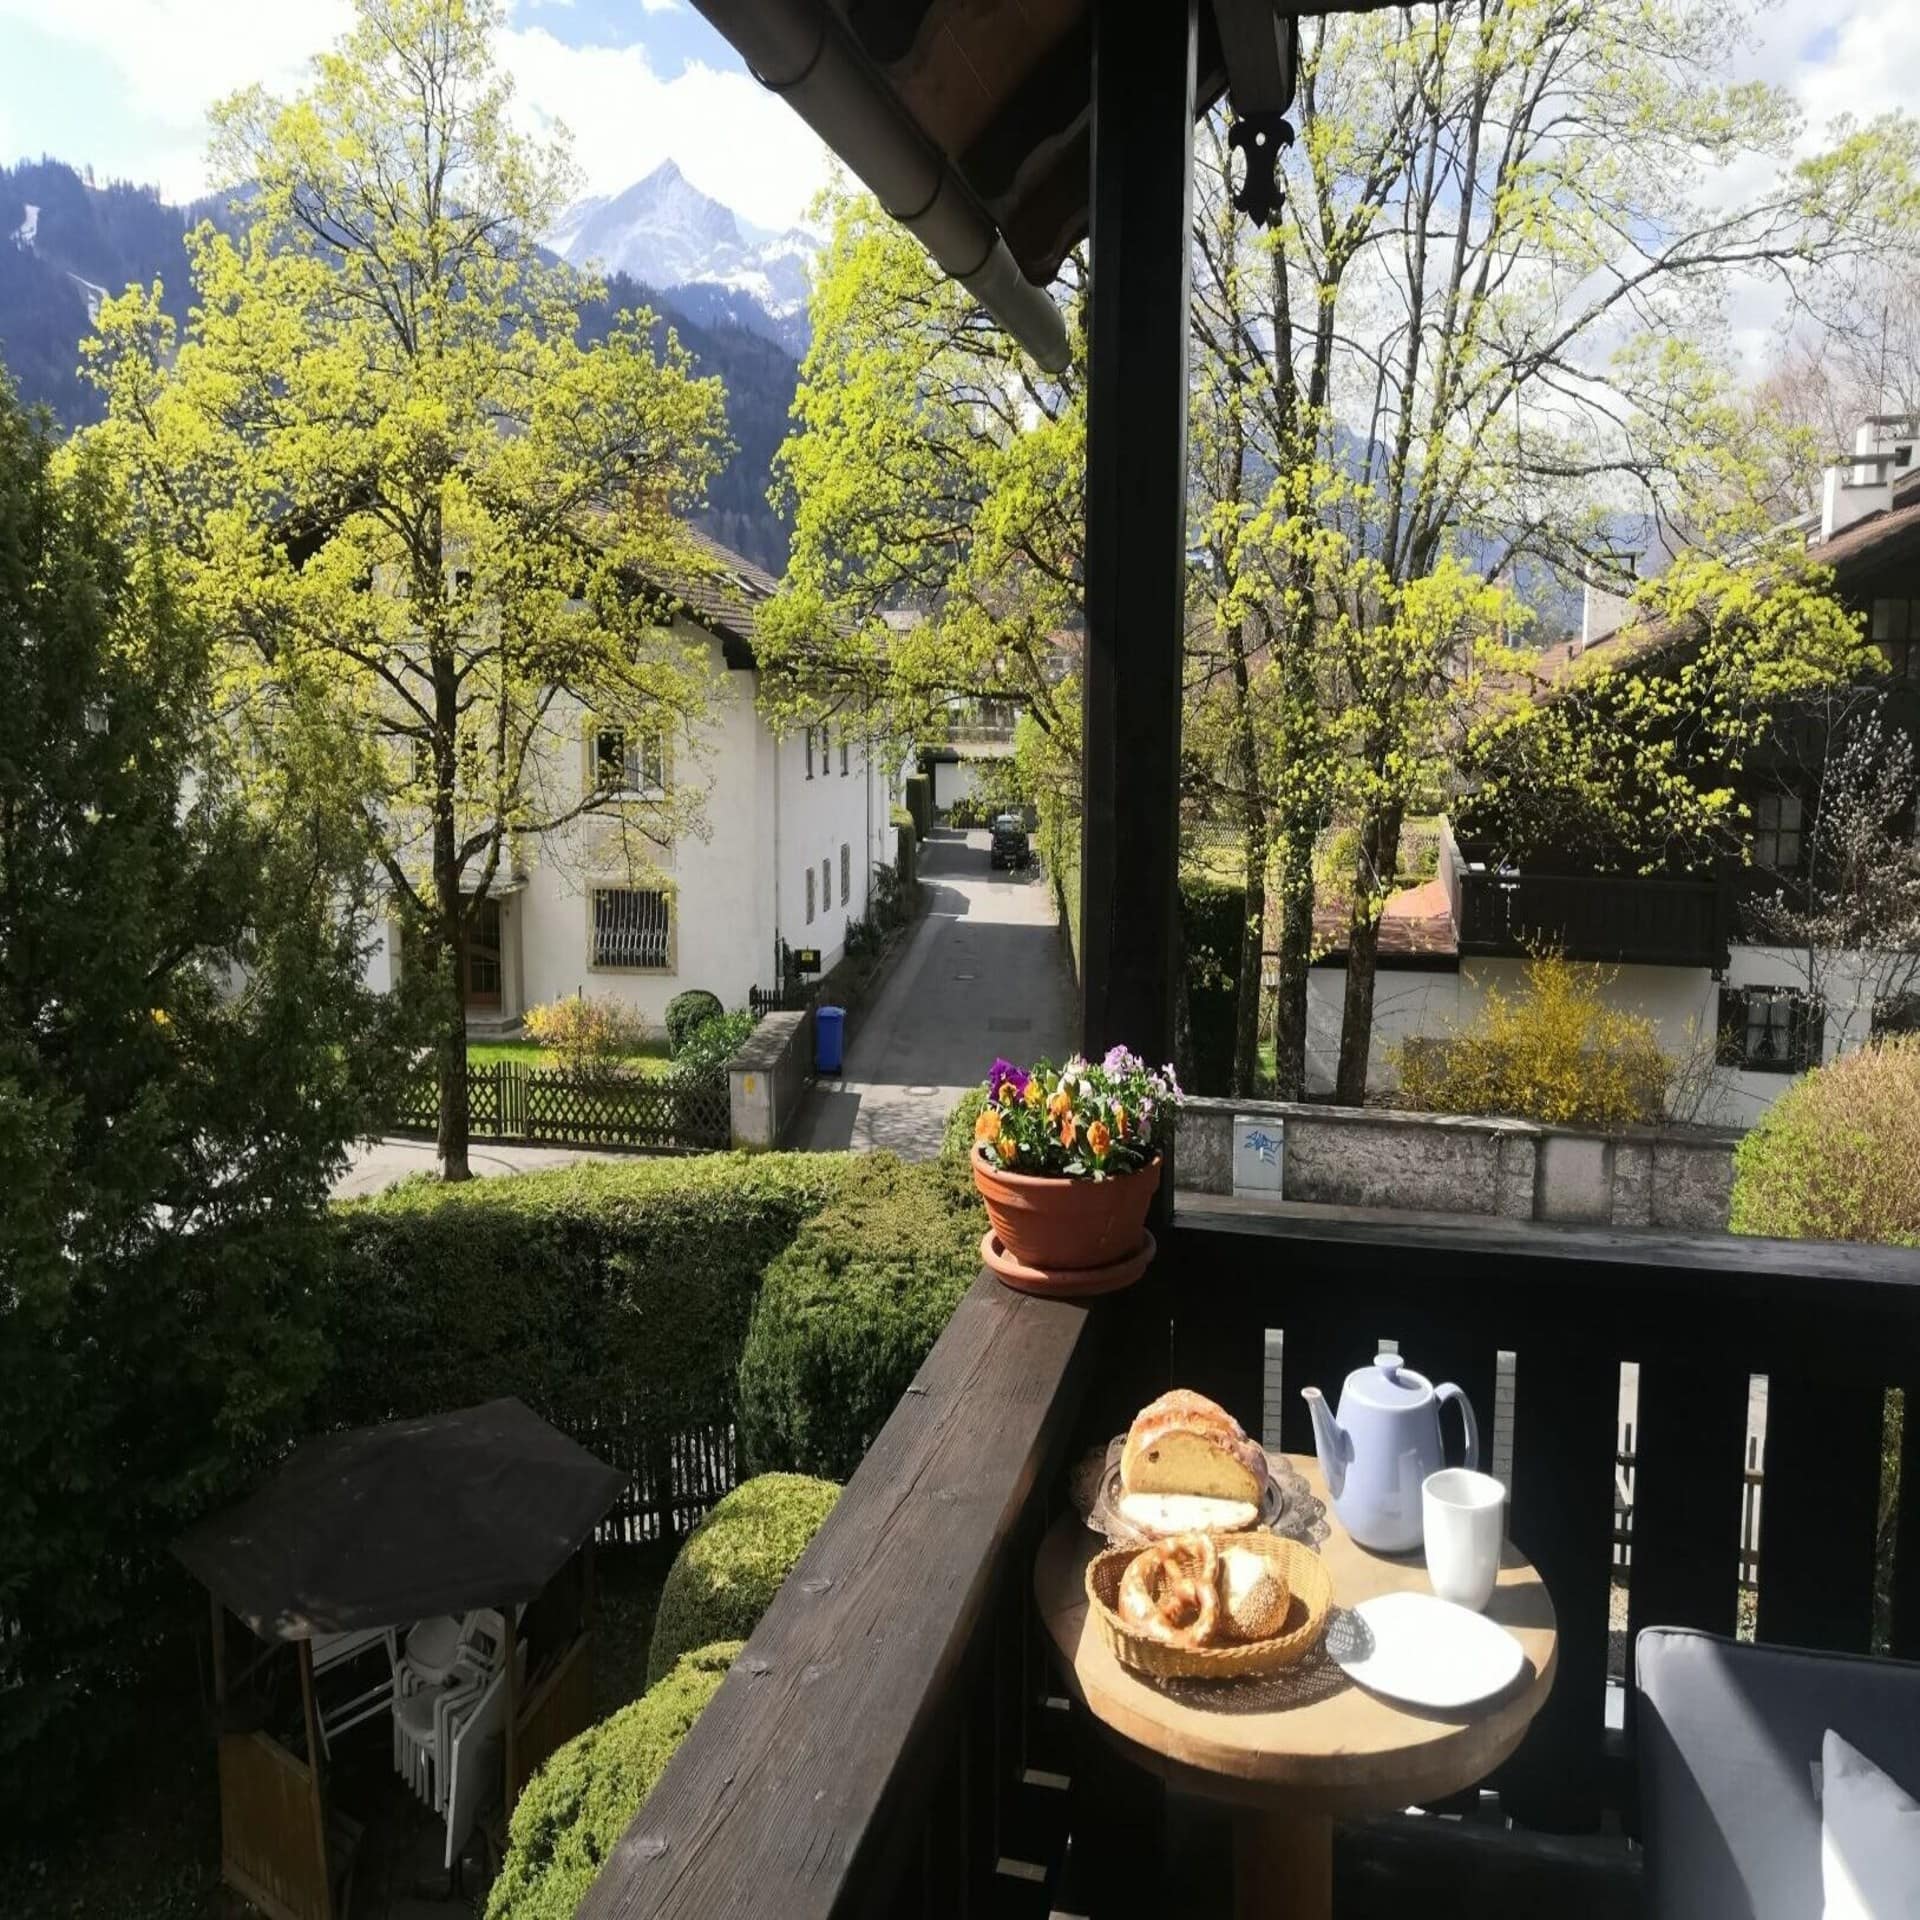 Balkon mit kleinem Frühstückstisch und Blick auf die Umgebung und die Berge. Es ist Frühling, die Sonne scheint.